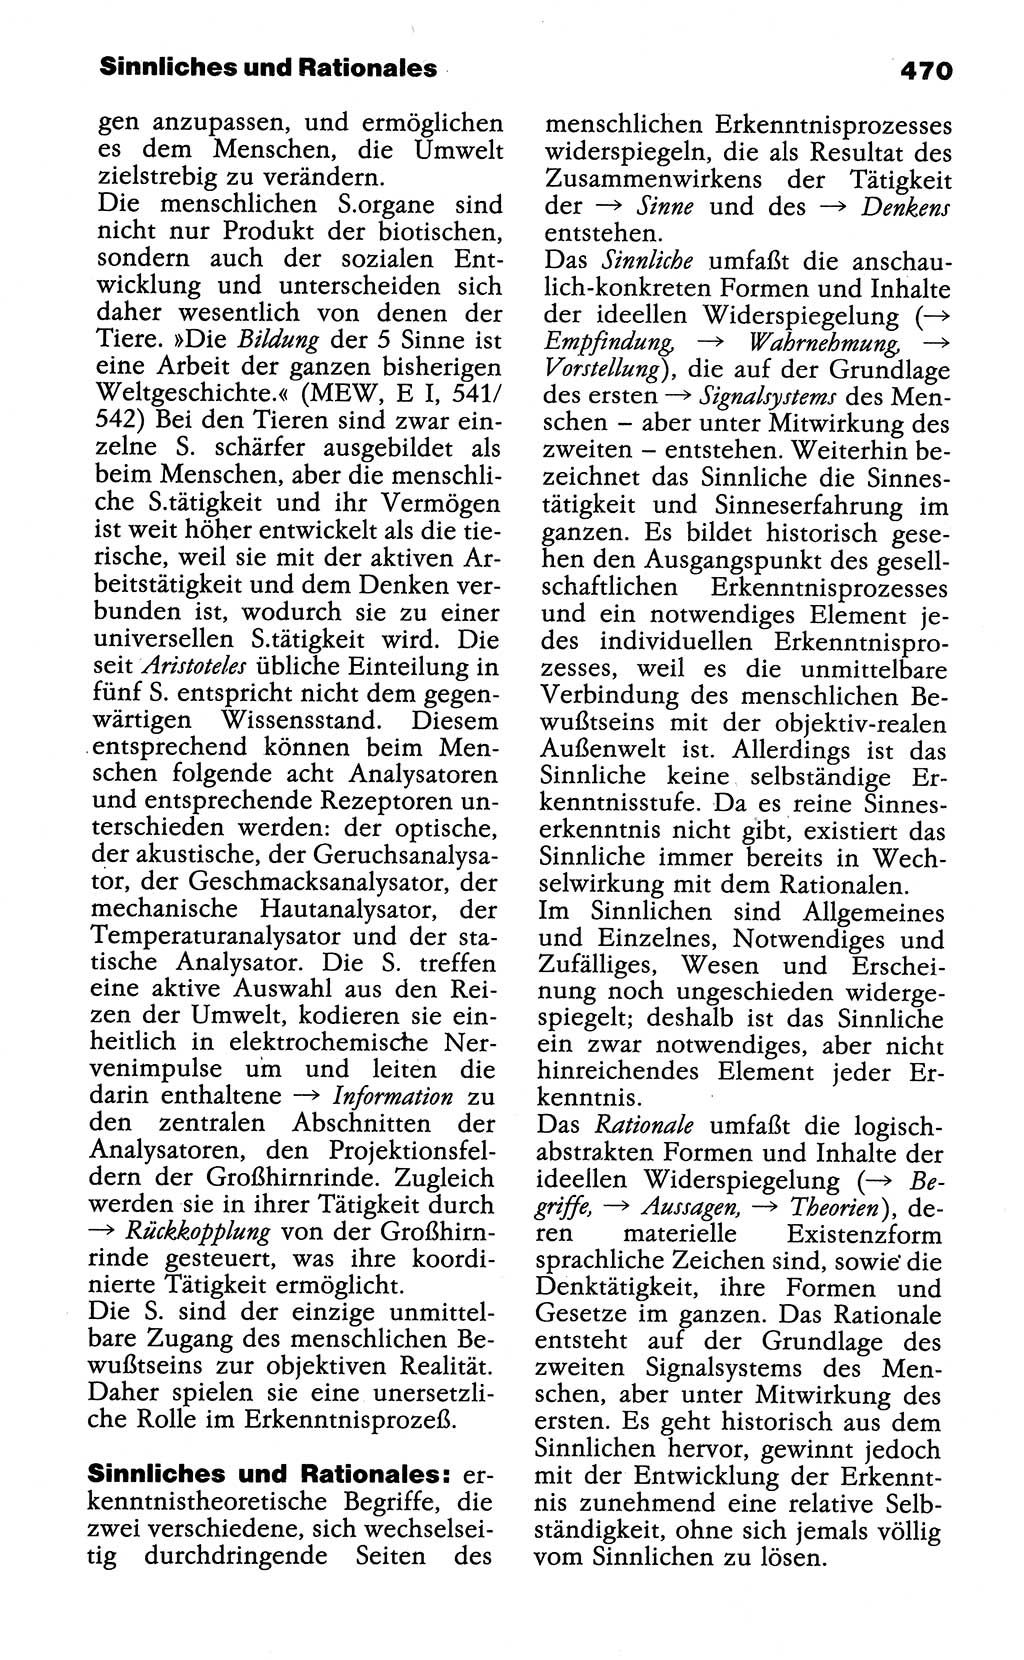 Wörterbuch der marxistisch-leninistischen Philosophie [Deutsche Demokratische Republik (DDR)] 1985, Seite 470 (Wb. ML Phil. DDR 1985, S. 470)